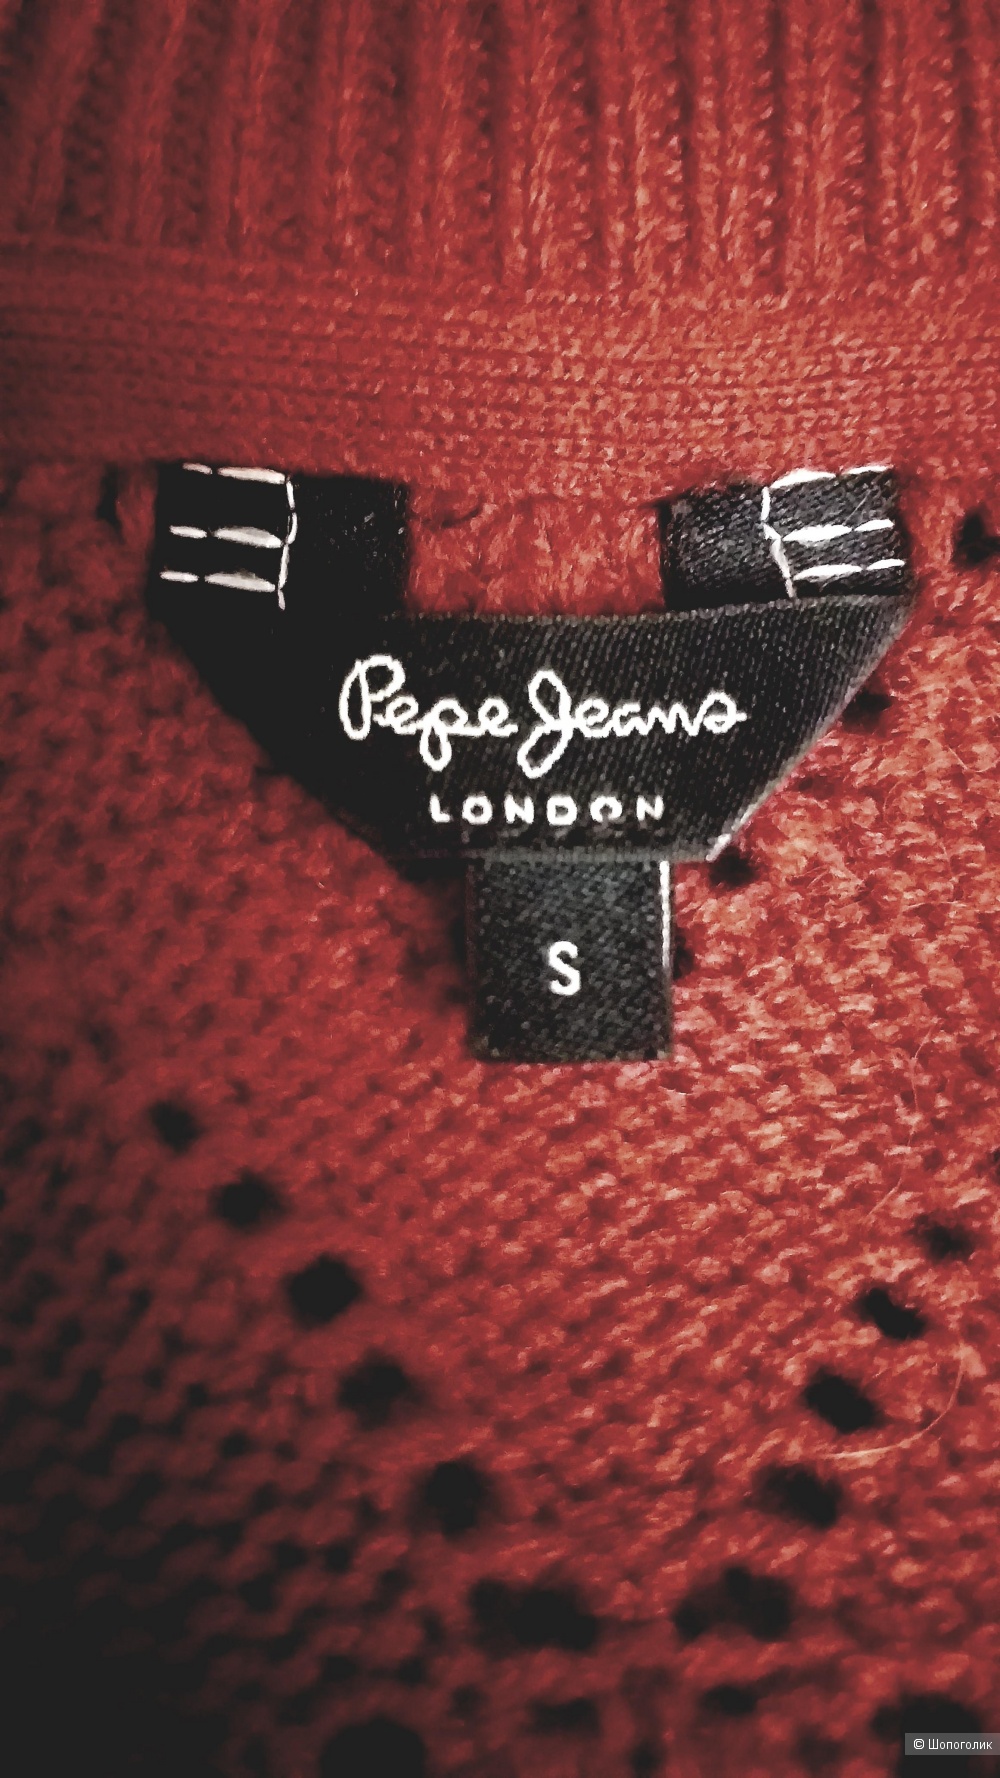 Джемпер Pepe Jeans London, р. М/L